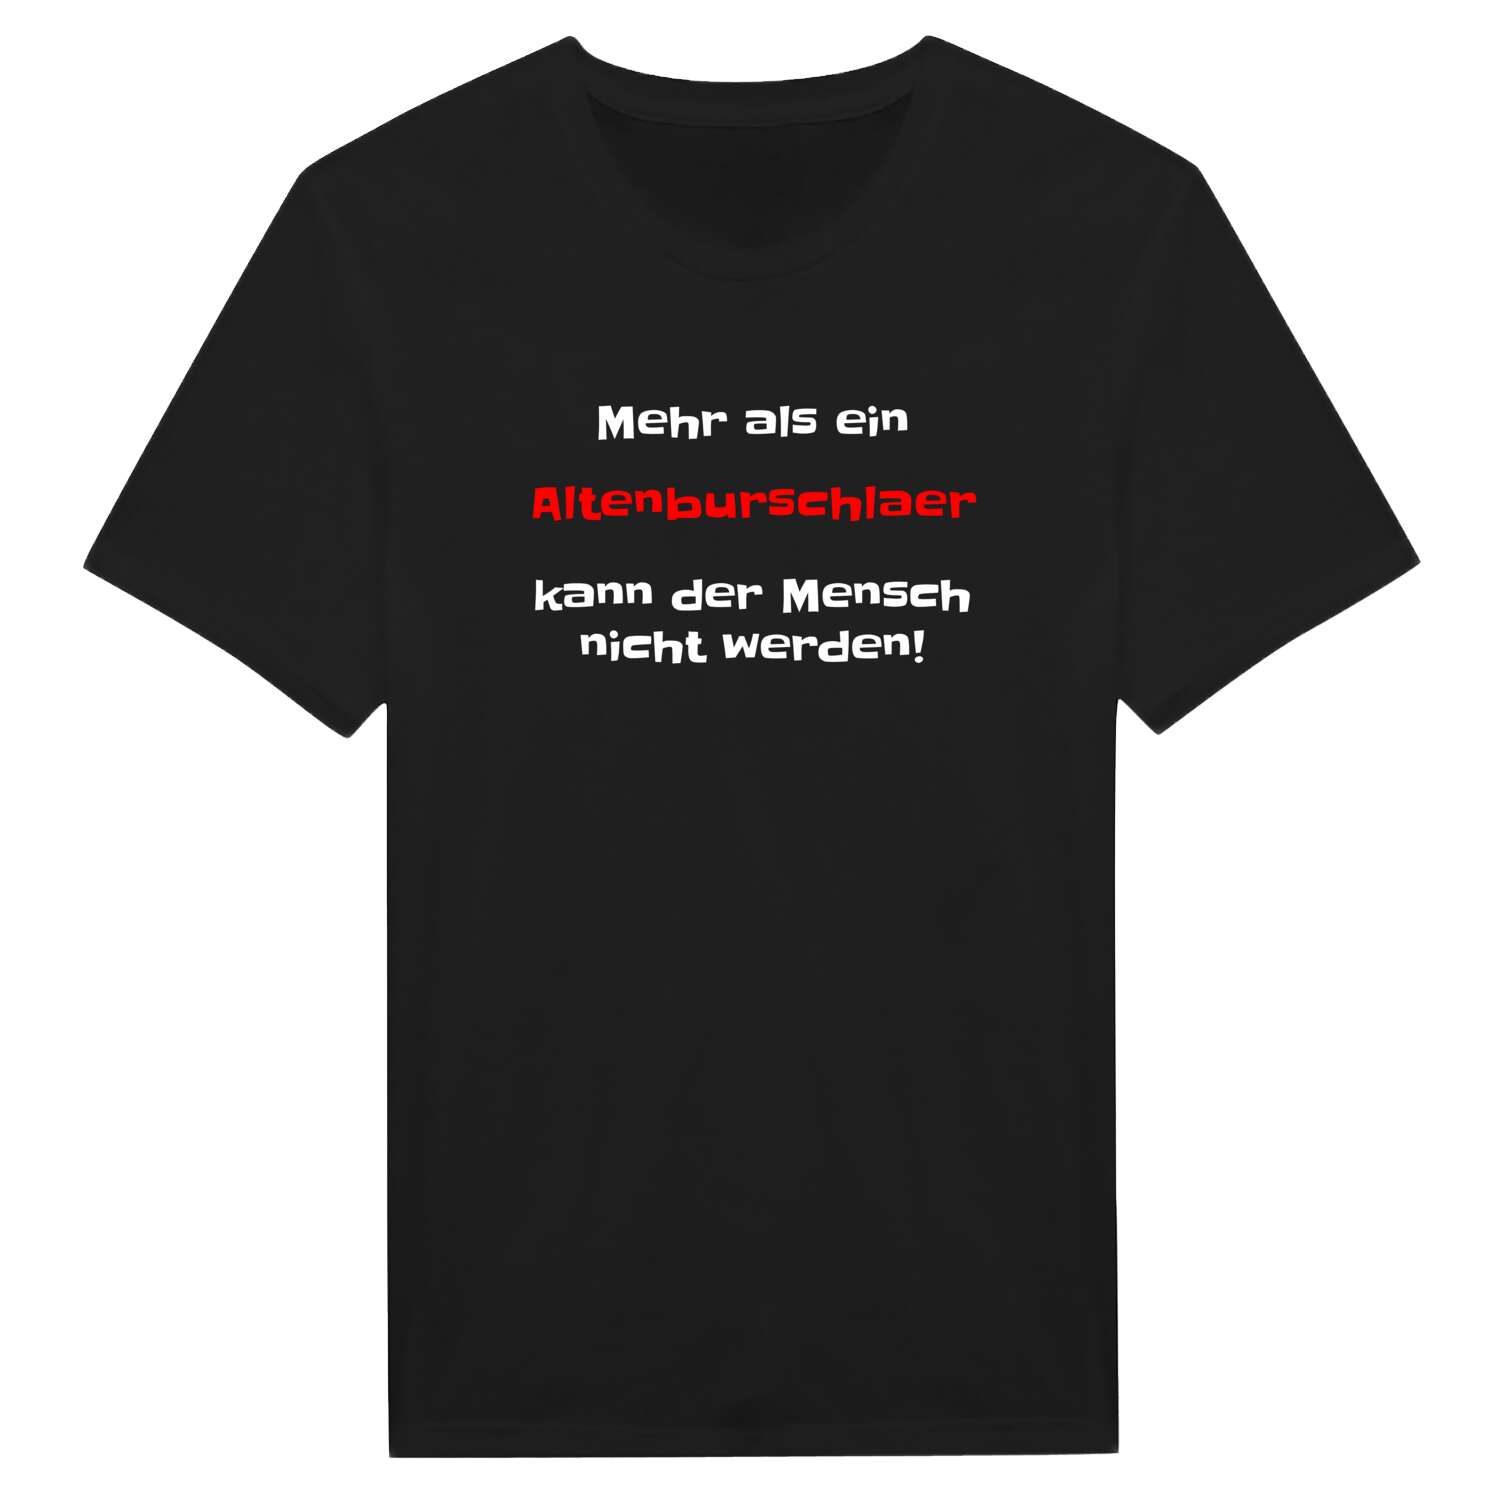 Altenburschla T-Shirt »Mehr als ein«